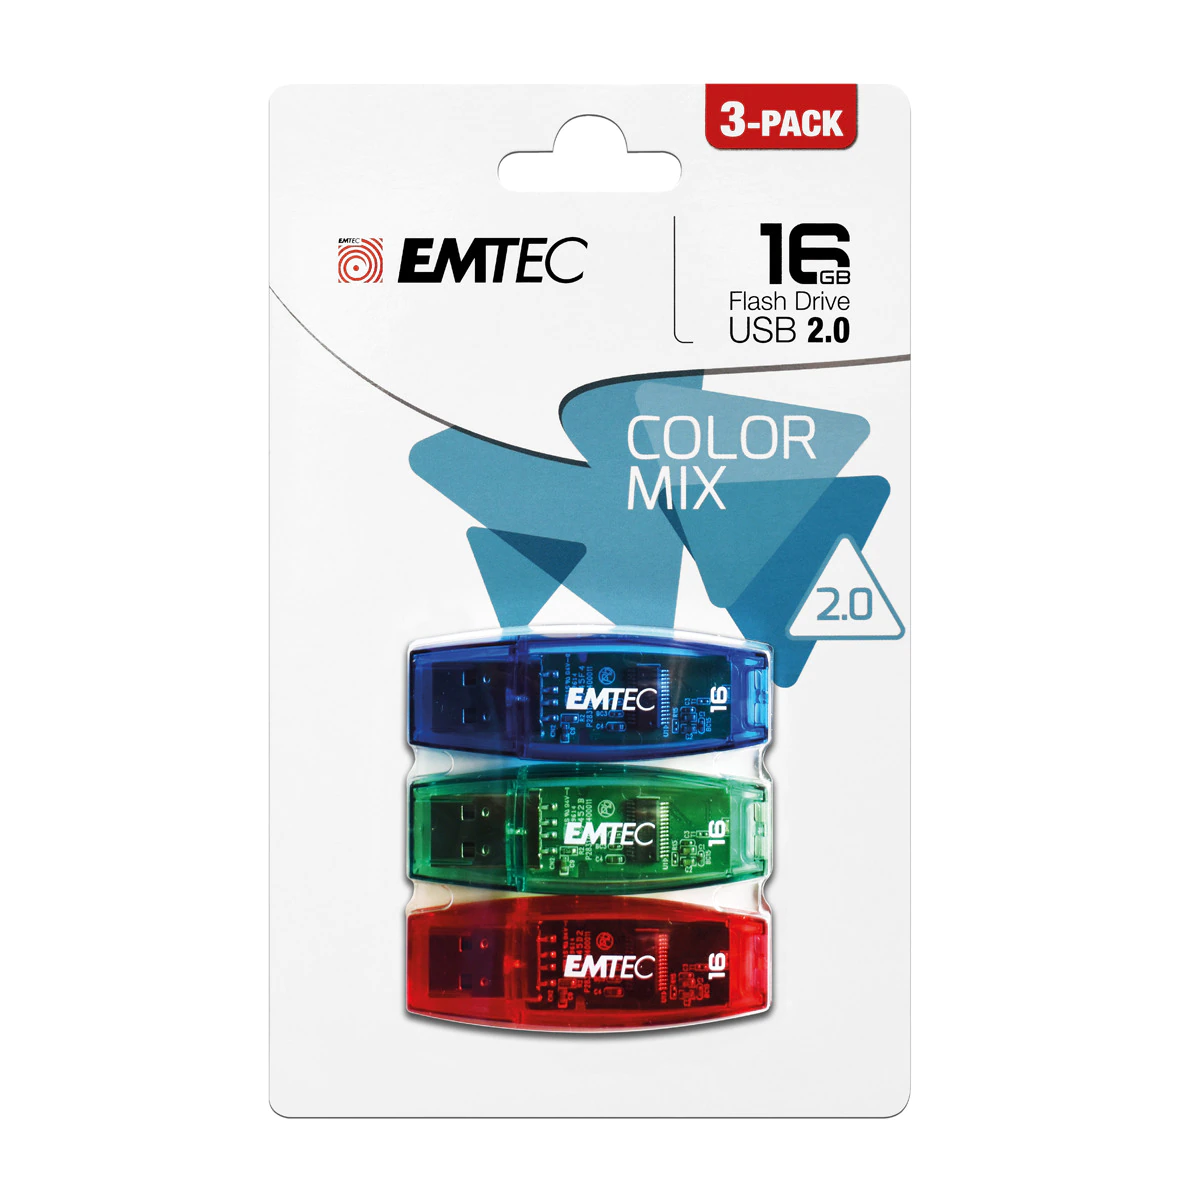 Pack 3 Pendrives Emtec C410 Color Mix USB 2.0 16 GB